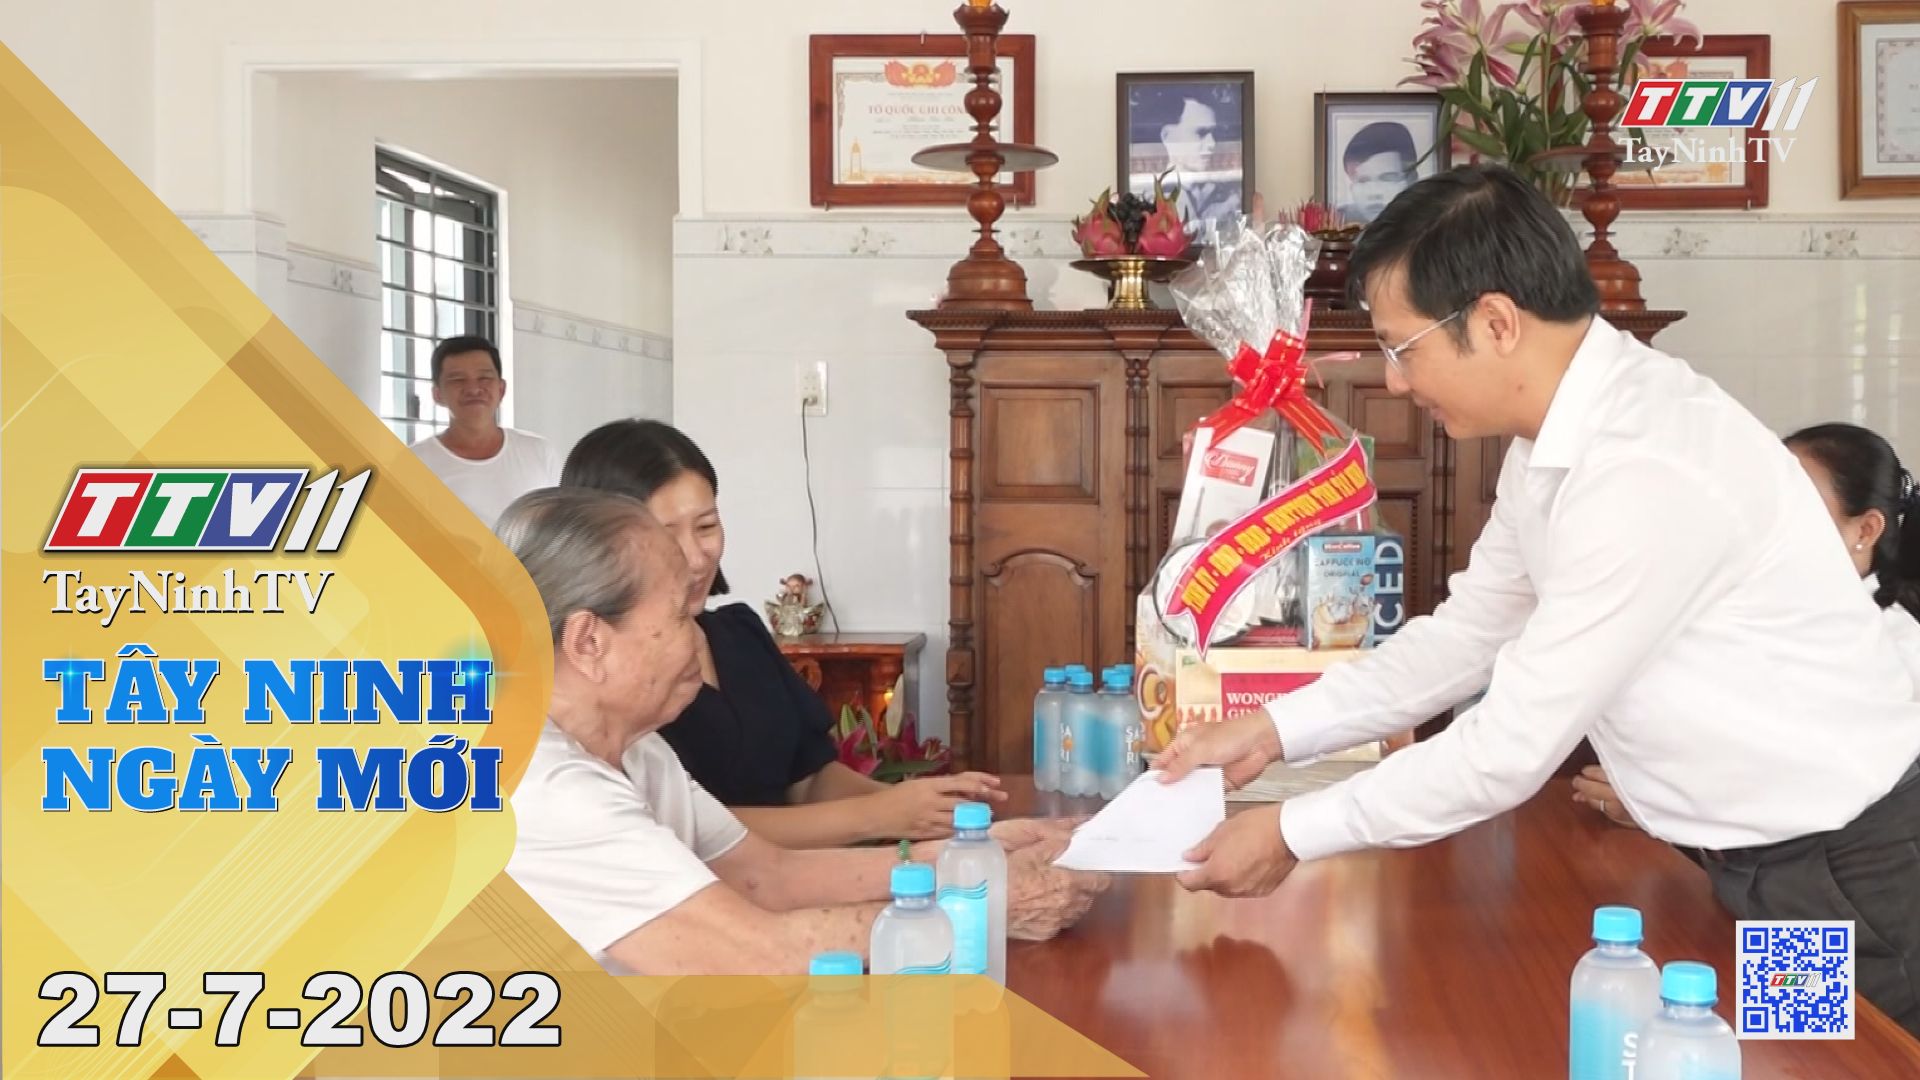 Tây Ninh ngày mới 27-7-2022 | Tin tức hôm nay | TayNinhTV